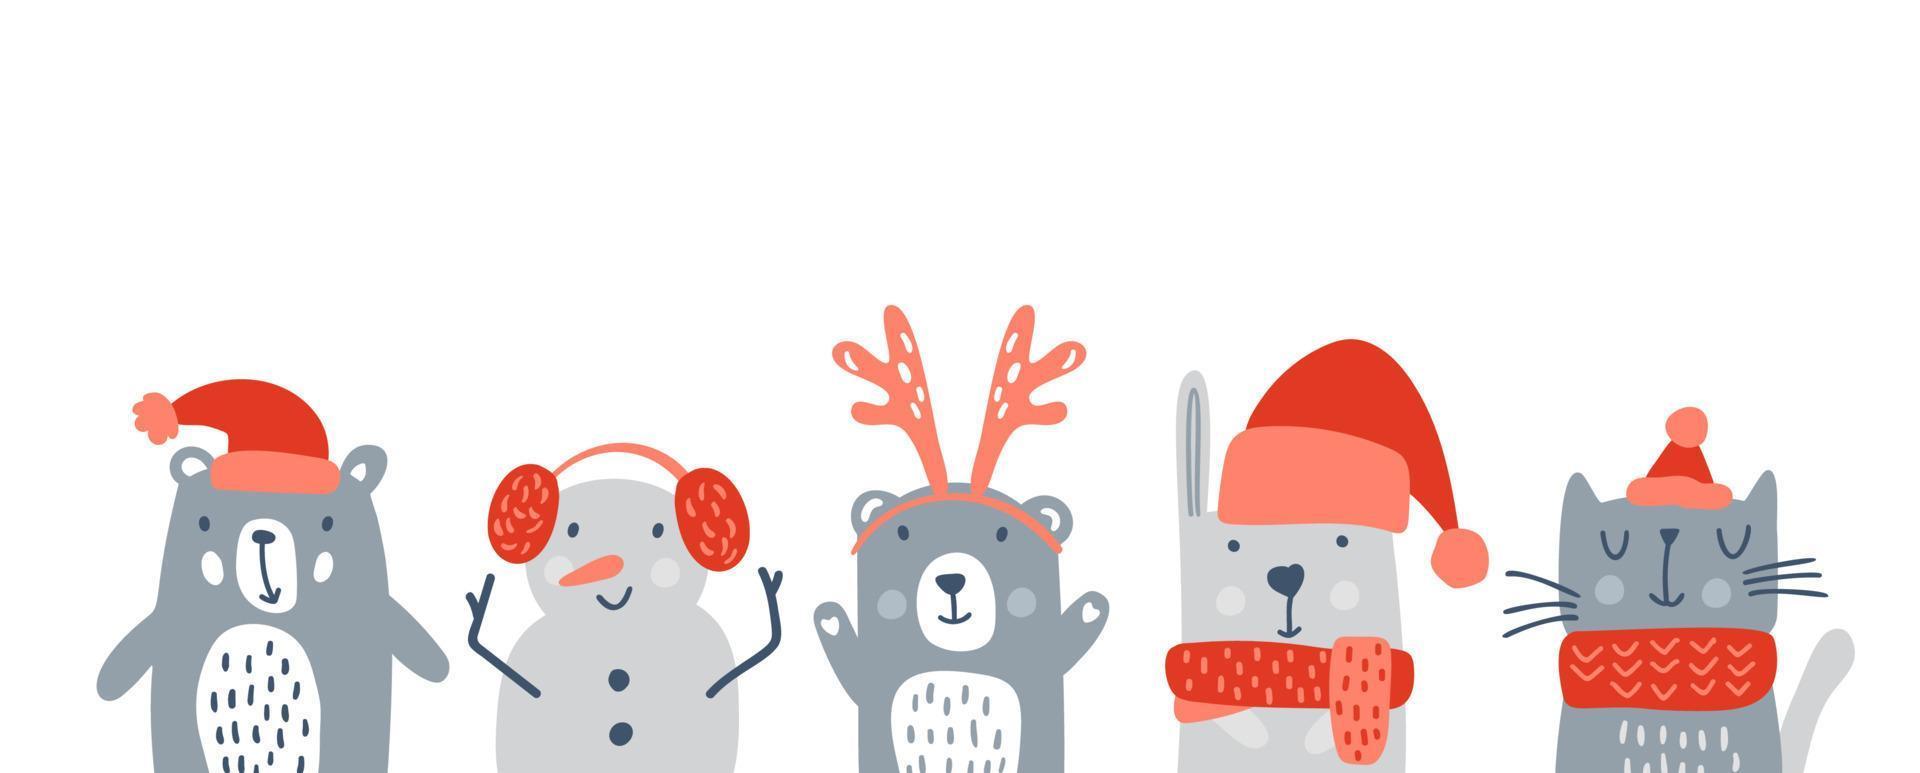 set van schattige kinderen kerst dieren beer, sneeuwpop schattig konijn en kat. vector baby winter illustratie voor kinderkamer t-shirt, kinderkleding, uitnodigingskaart, poster. eenvoudig scandinavisch kinderontwerp